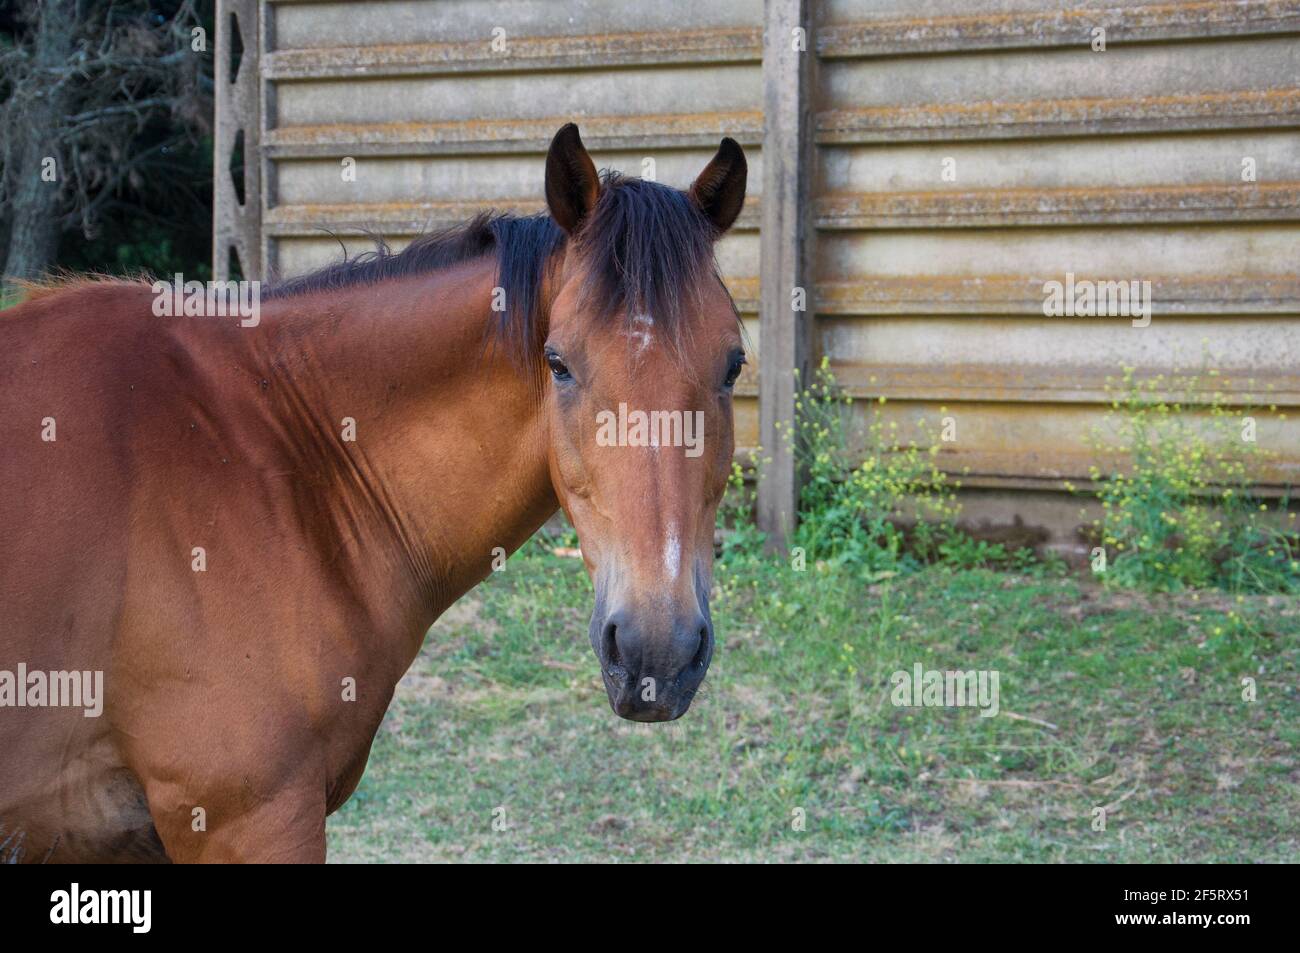 A horse on the farm Stock Photo